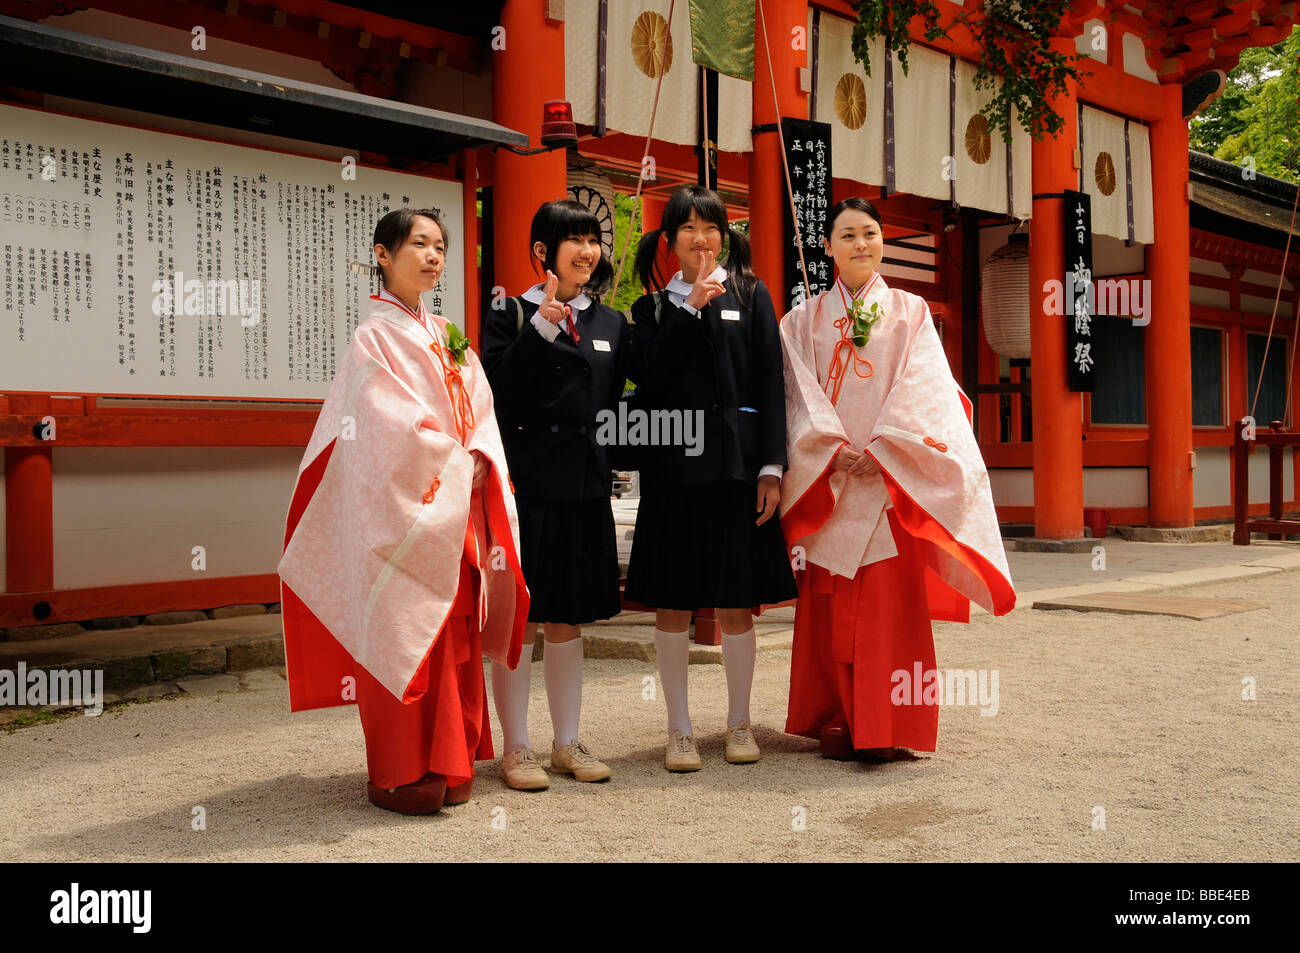 Japanische Studenten in Uniform mit dem Schrein Jungfrauen als ein Fotomotiv mit der typisch japanischen Victory-Zeichen, Shimogamo shri Stockfoto